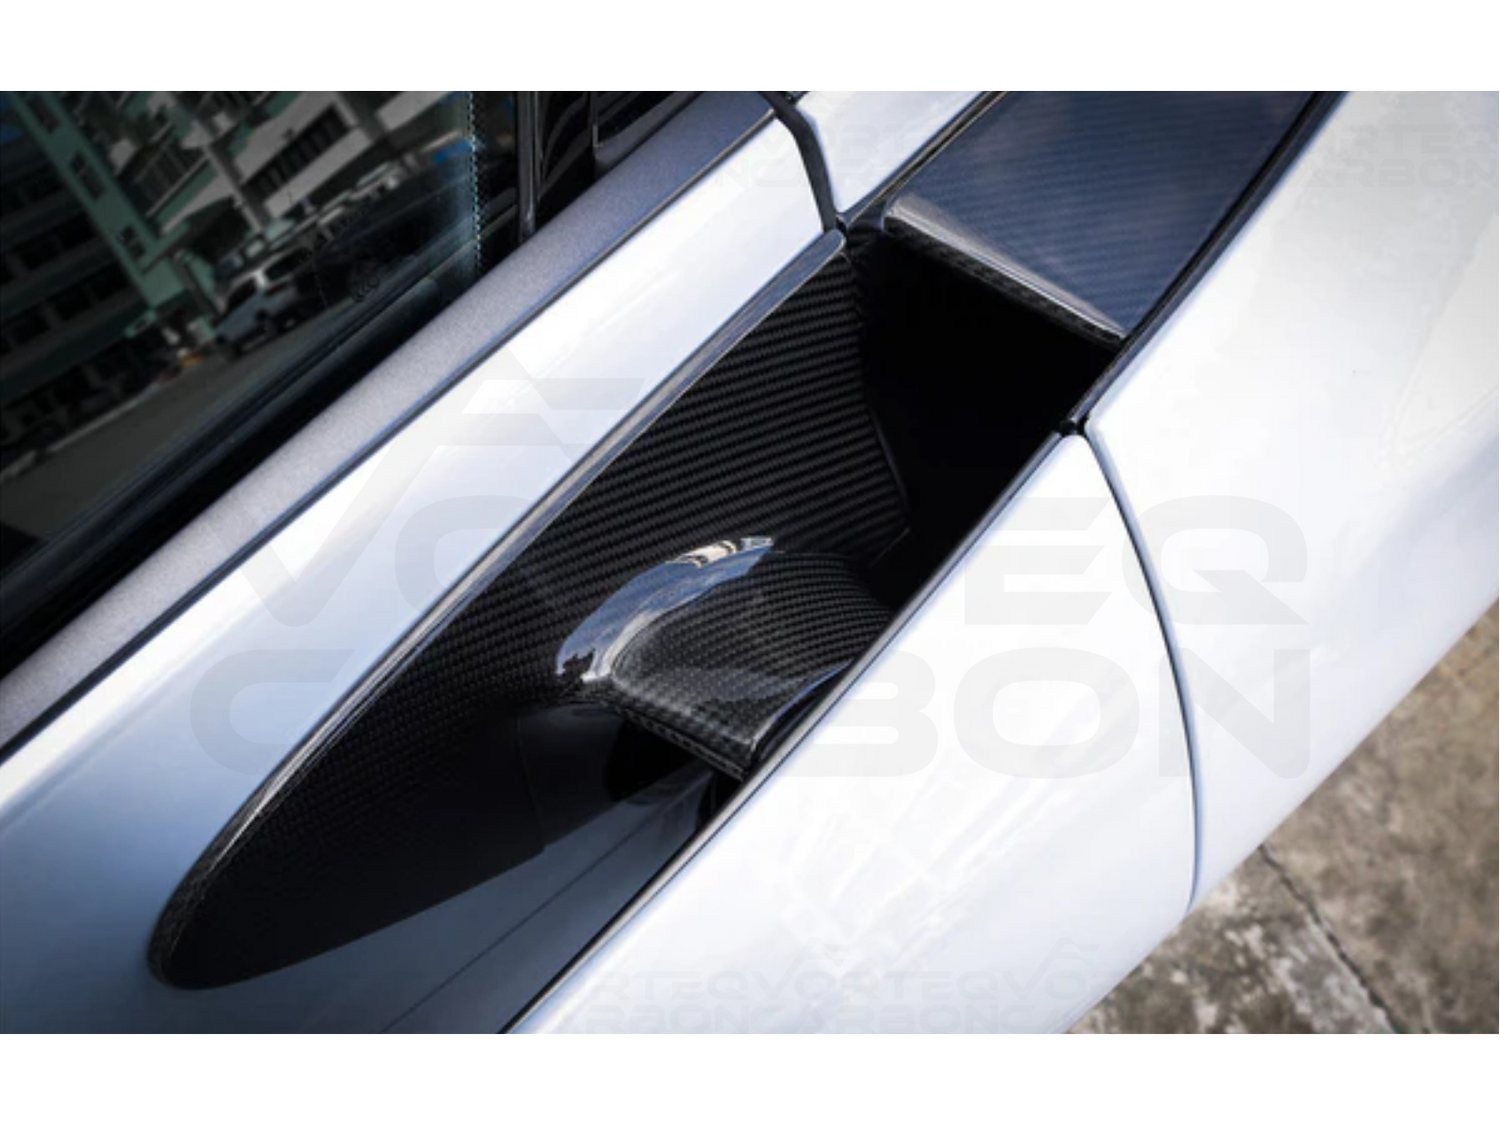 vorteq carbon fiber mclaren 720s door handles